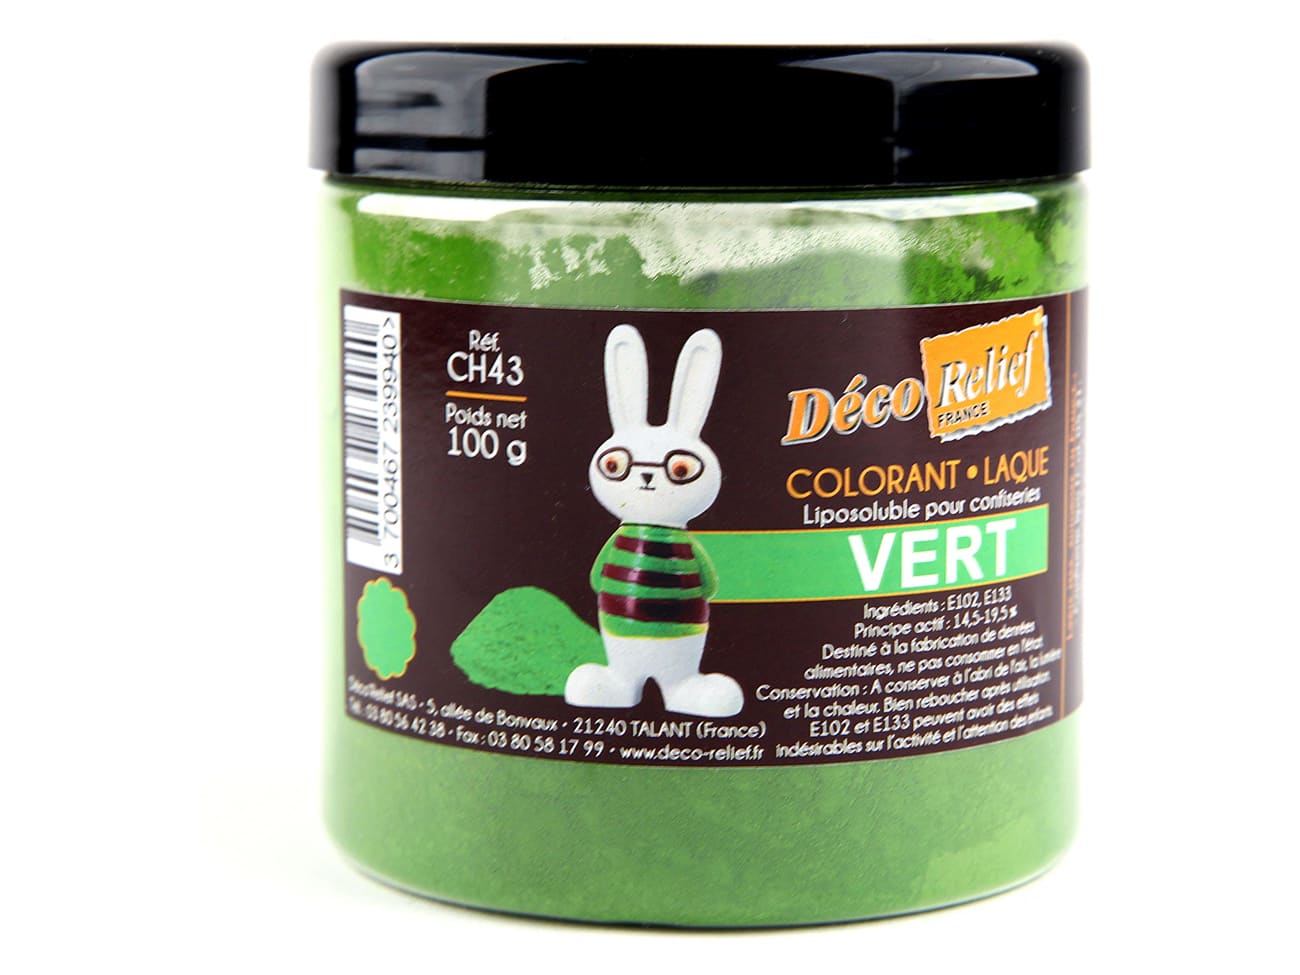 Colorant Alimentaire Vert 125ml (Préco)